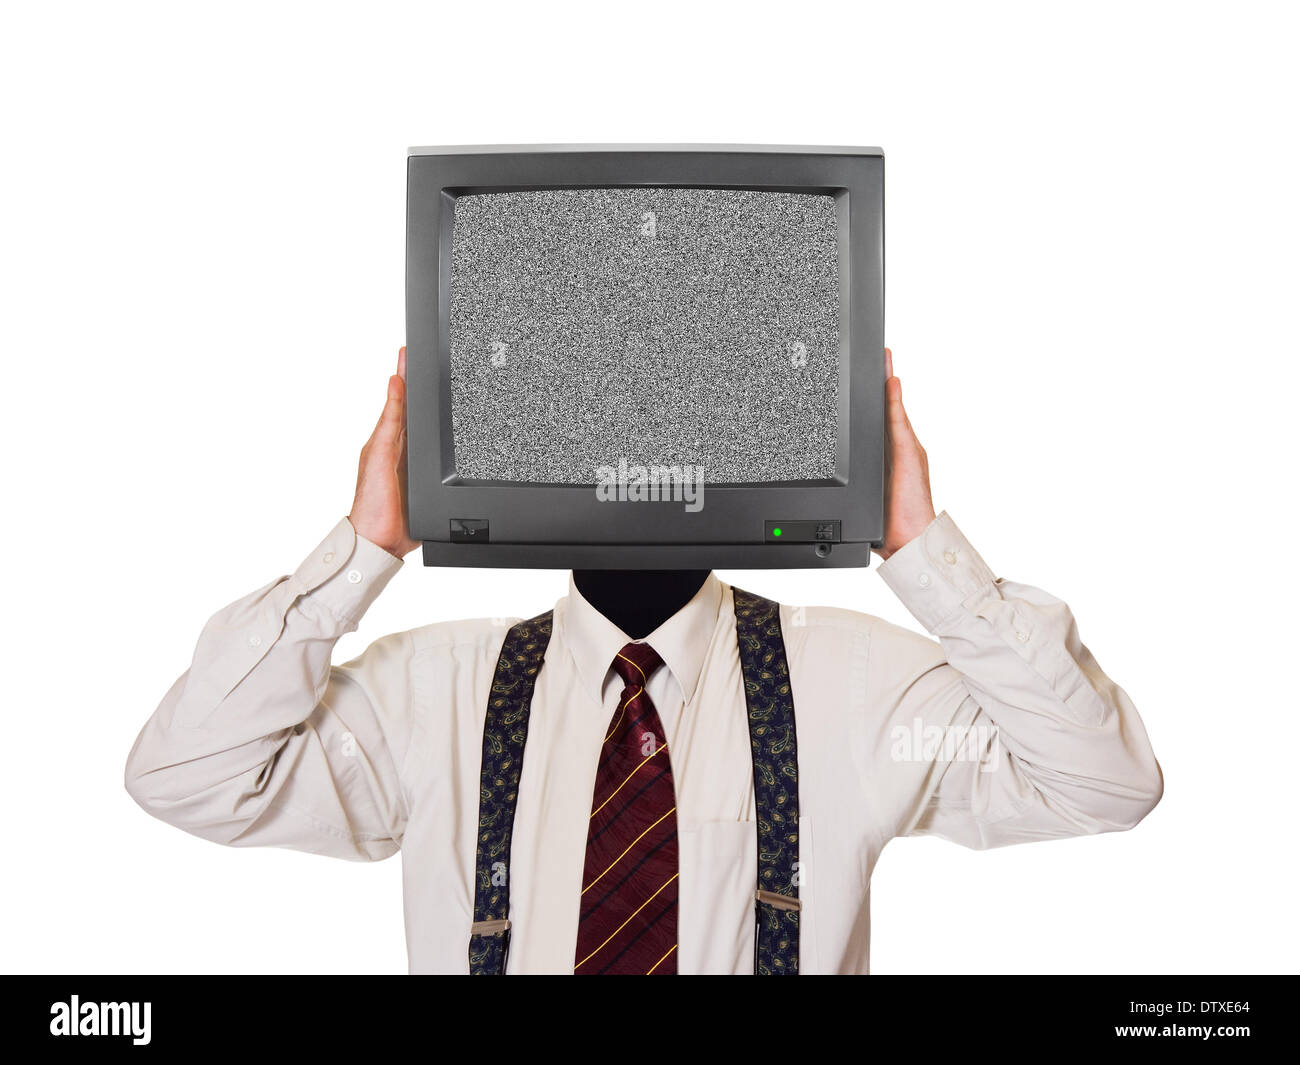 Tv man 18. Компьютер вместо головы. Голова компьютер. Костюм телевизора. Голова монитор.